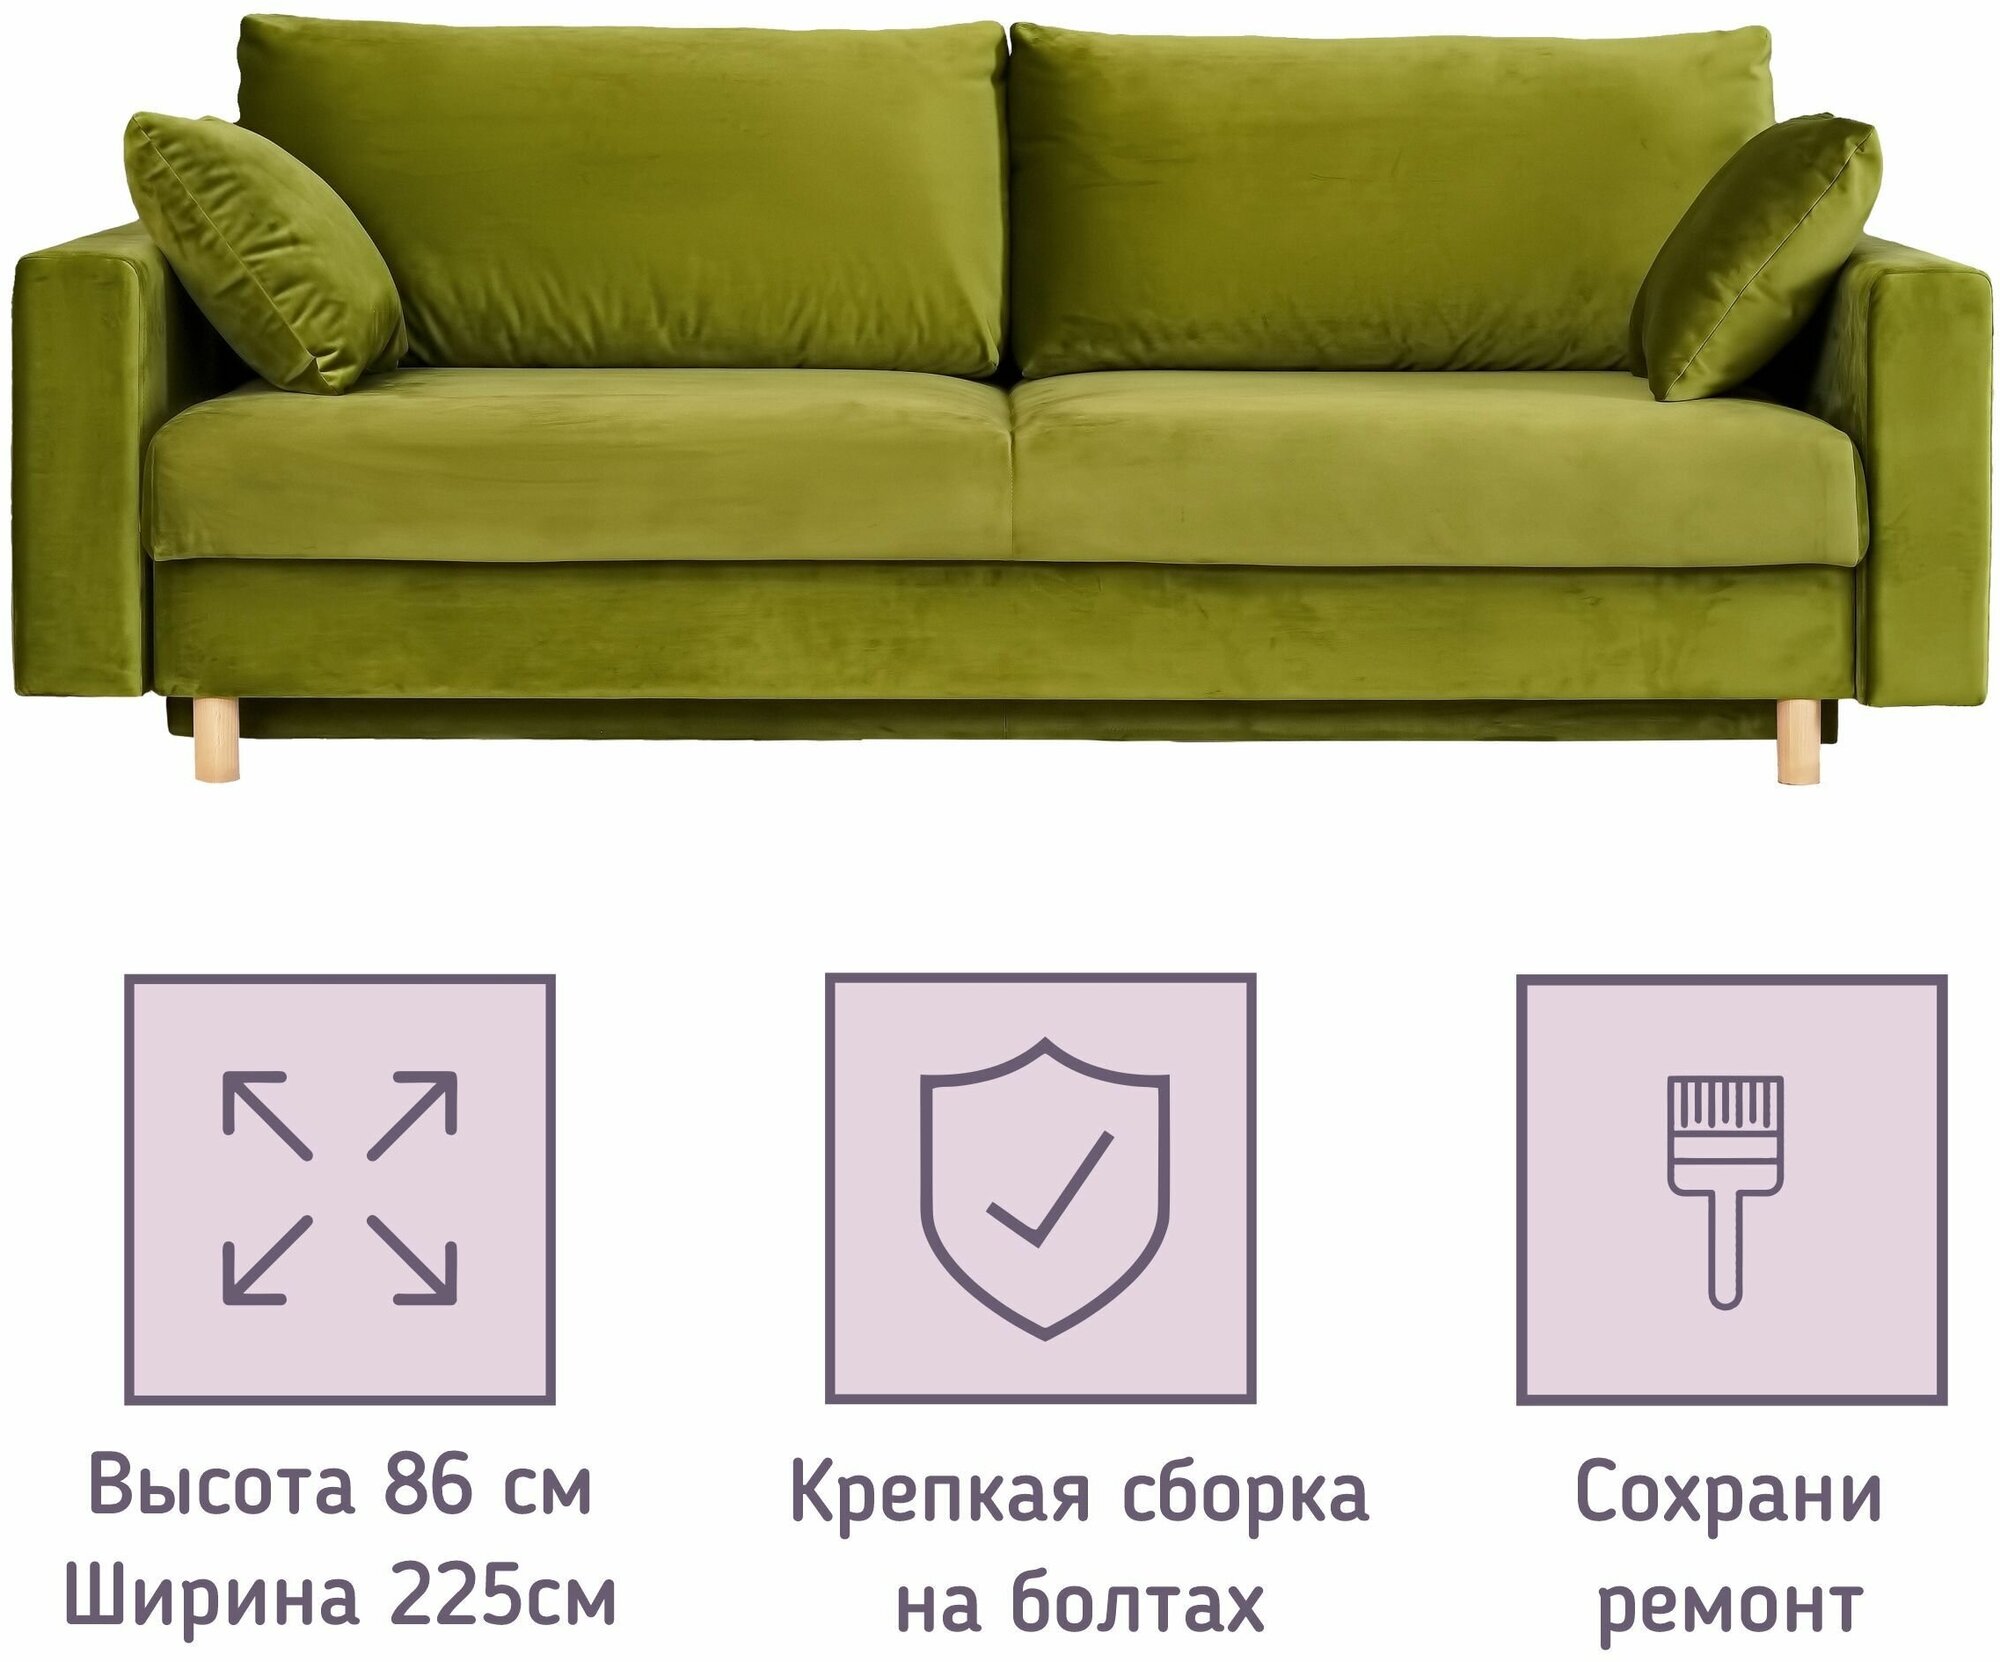 Диван-кровать PHELAN (Фелан) прямой, раскладной, Еврокнижка, 225х103, ВелюрVip 6 — купить в интернет-магазине по низкой цене на Яндекс Маркете